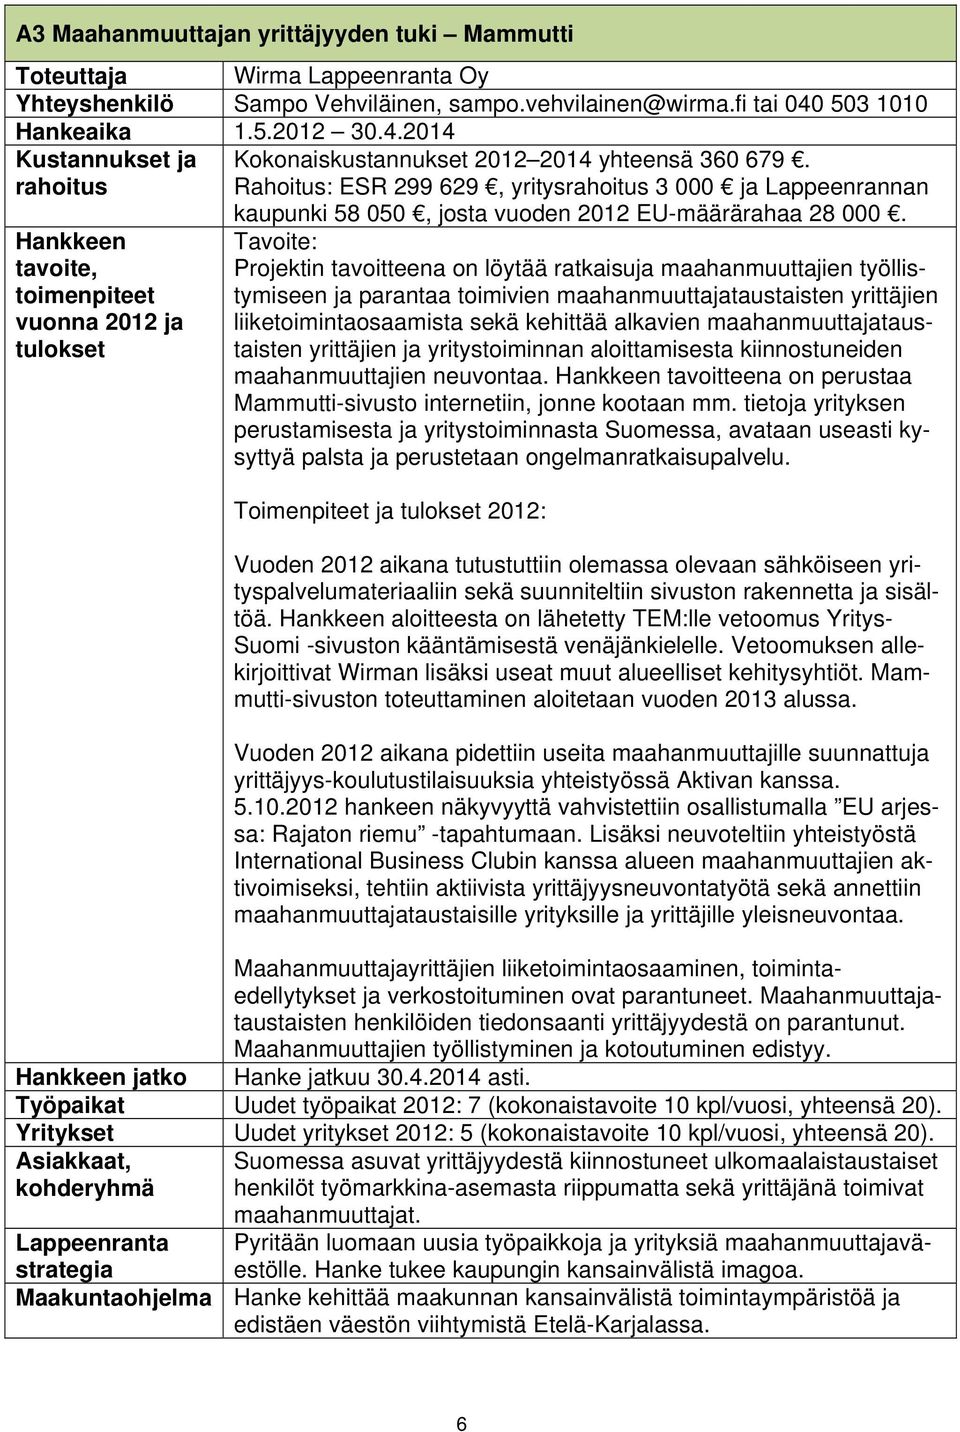 Rahoitus: ESR 299 629, yritys 3 000 ja Lappeenrannan kaupunki 58 050, josta vuoden 2012 EU-määrärahaa 28 000.